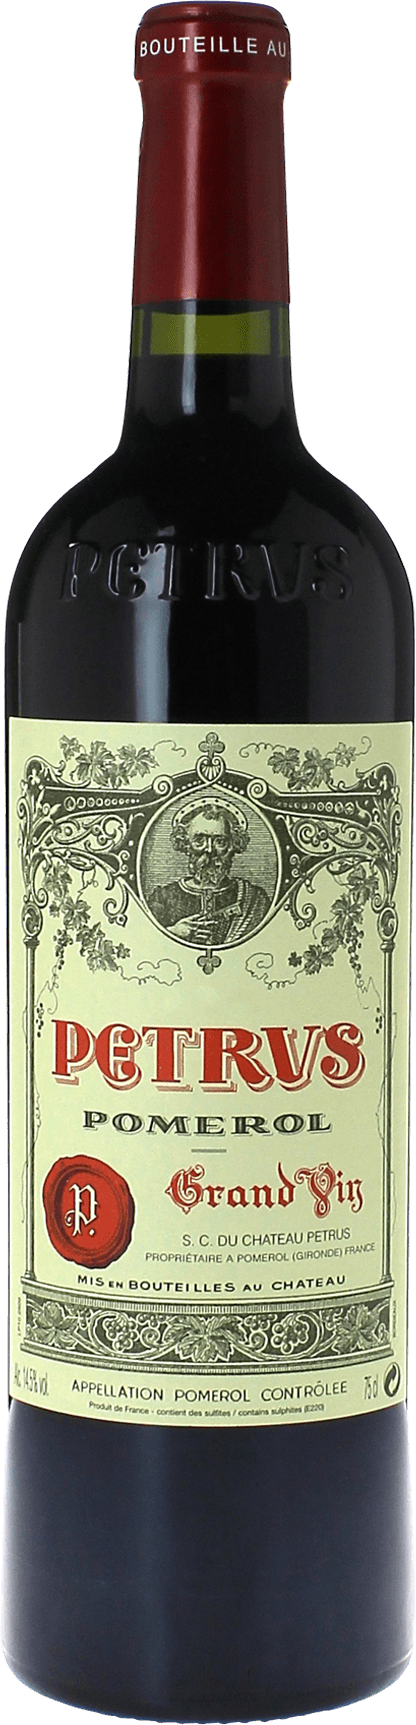 Petrus 1988  Pomerol, Bordeaux rouge